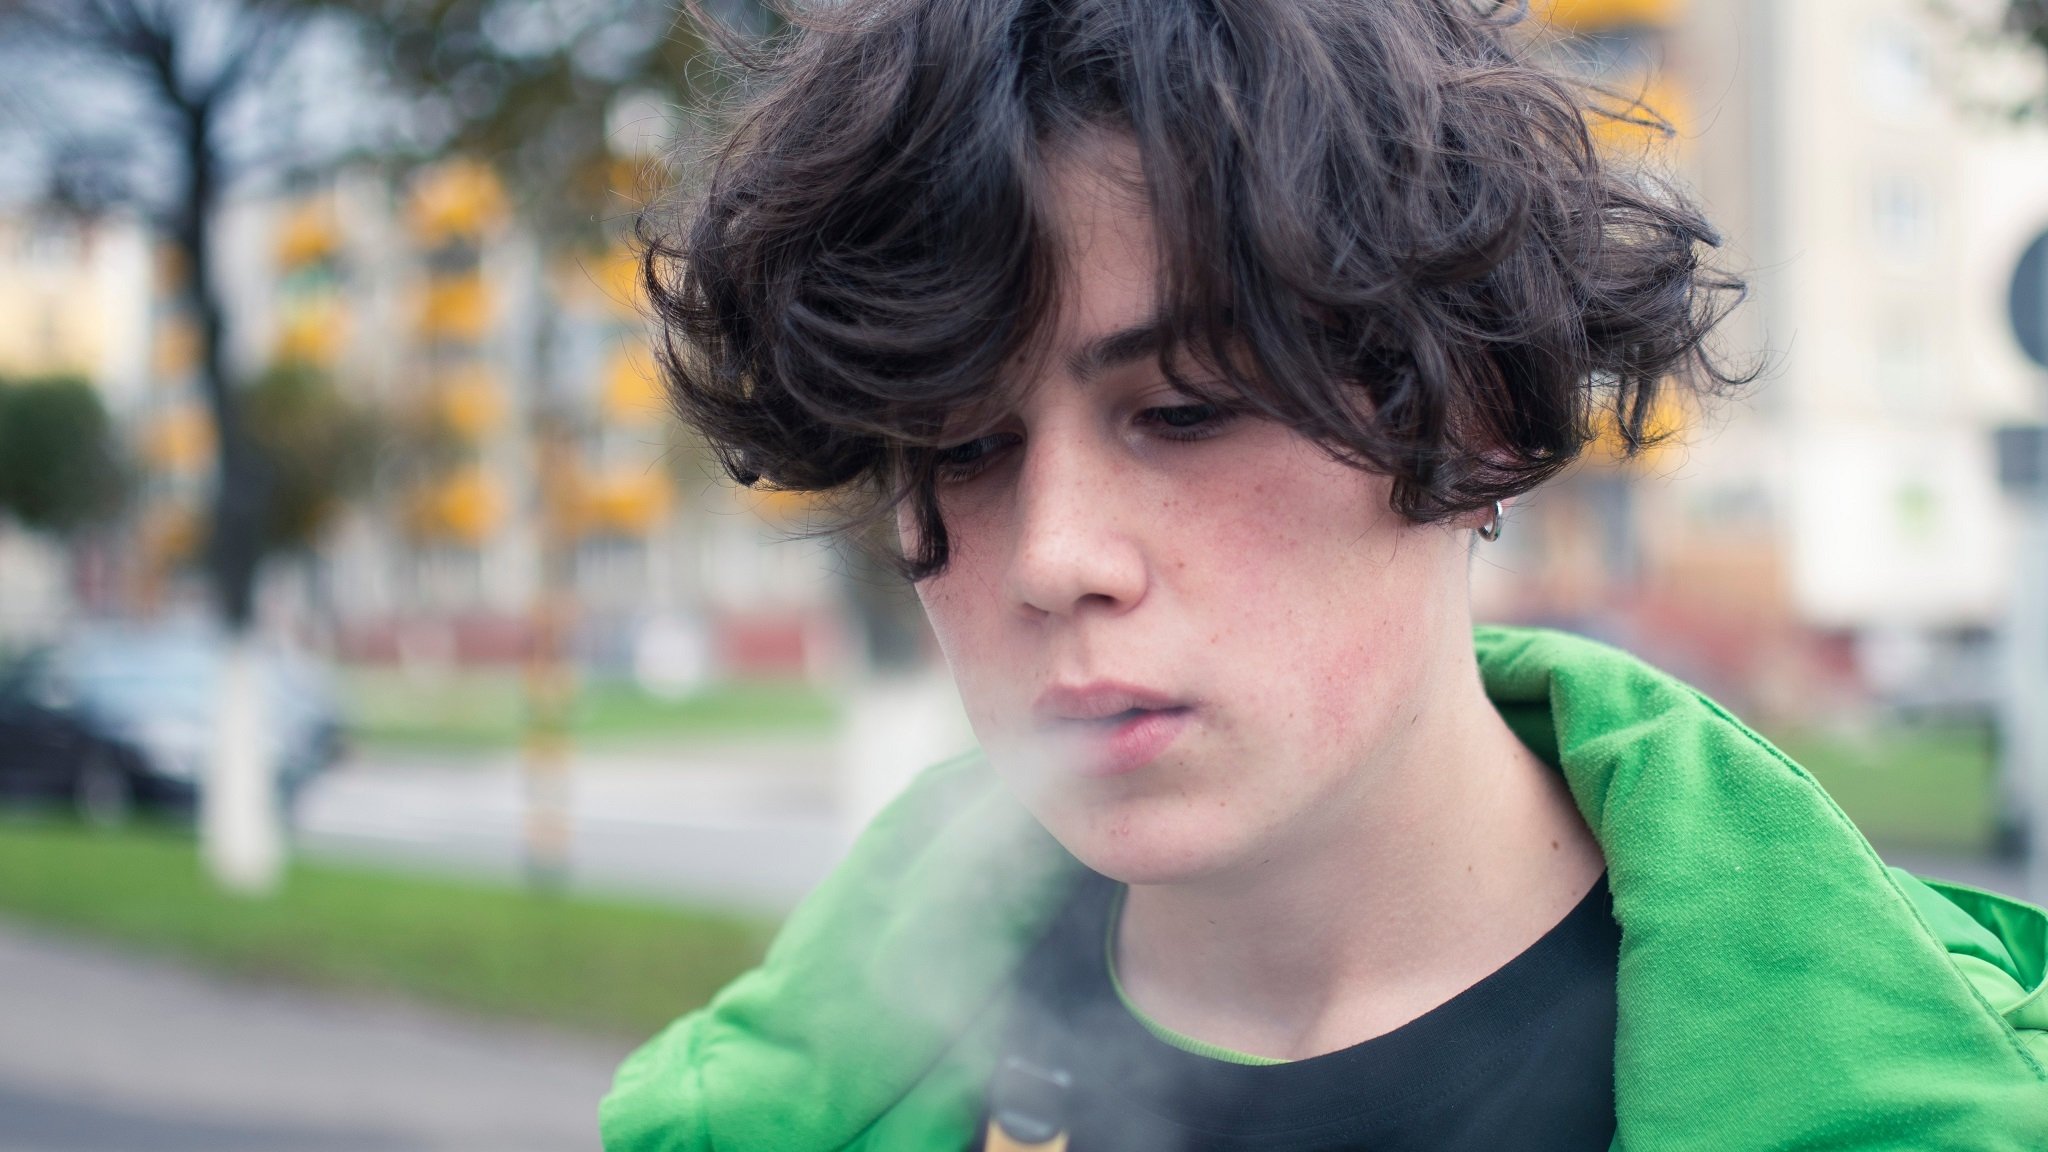 Jugendlicher, der E-Zigarette raucht